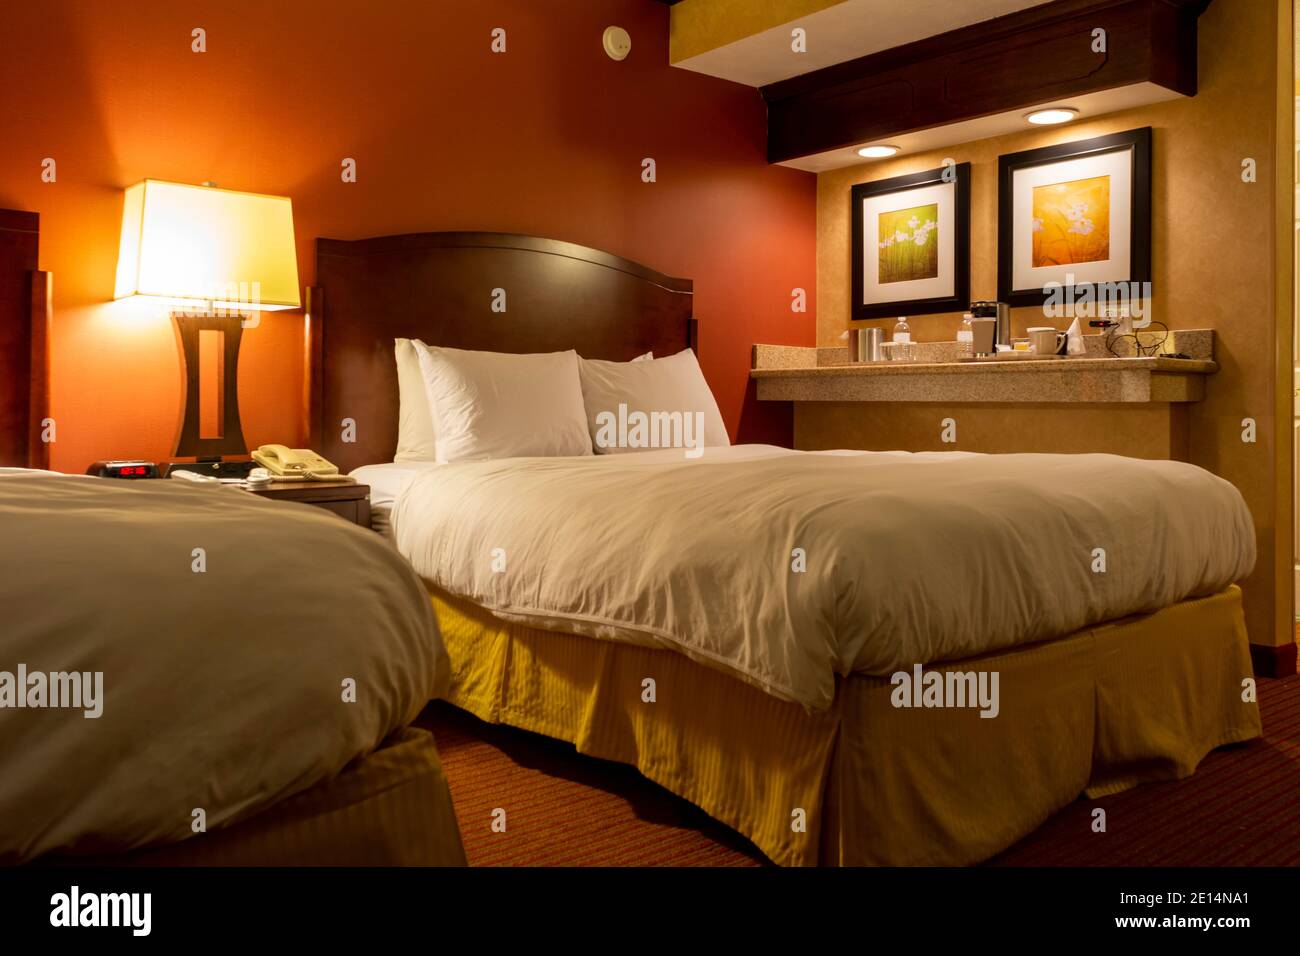 Vista de una cómoda habitación de hotel con colores cálidos y relajantes. Foto de stock